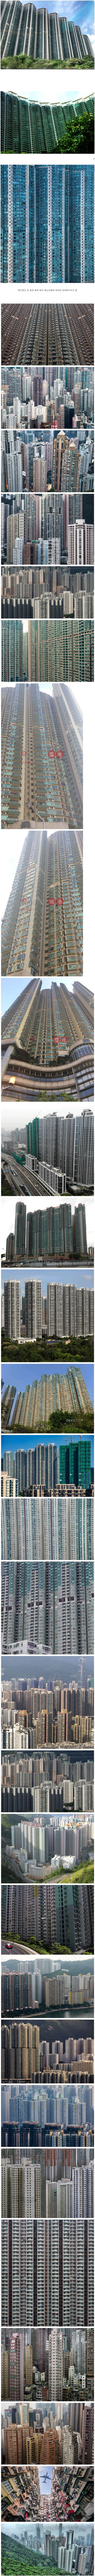 용적률 500%~1500% 홍콩 아파트들